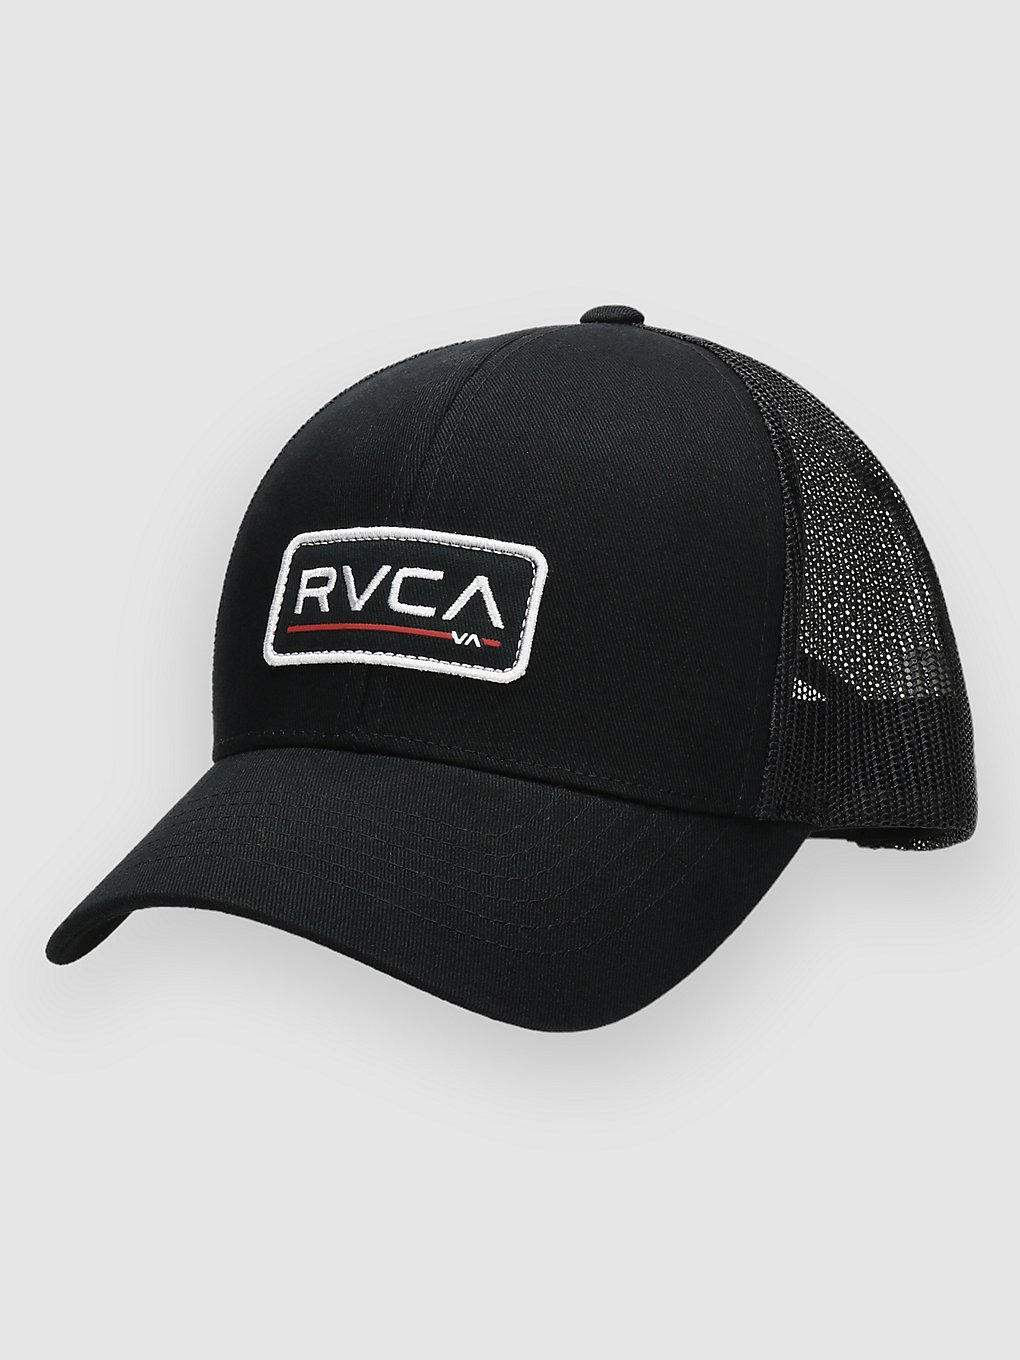 RVCA Ticket Trucker III petje zwart